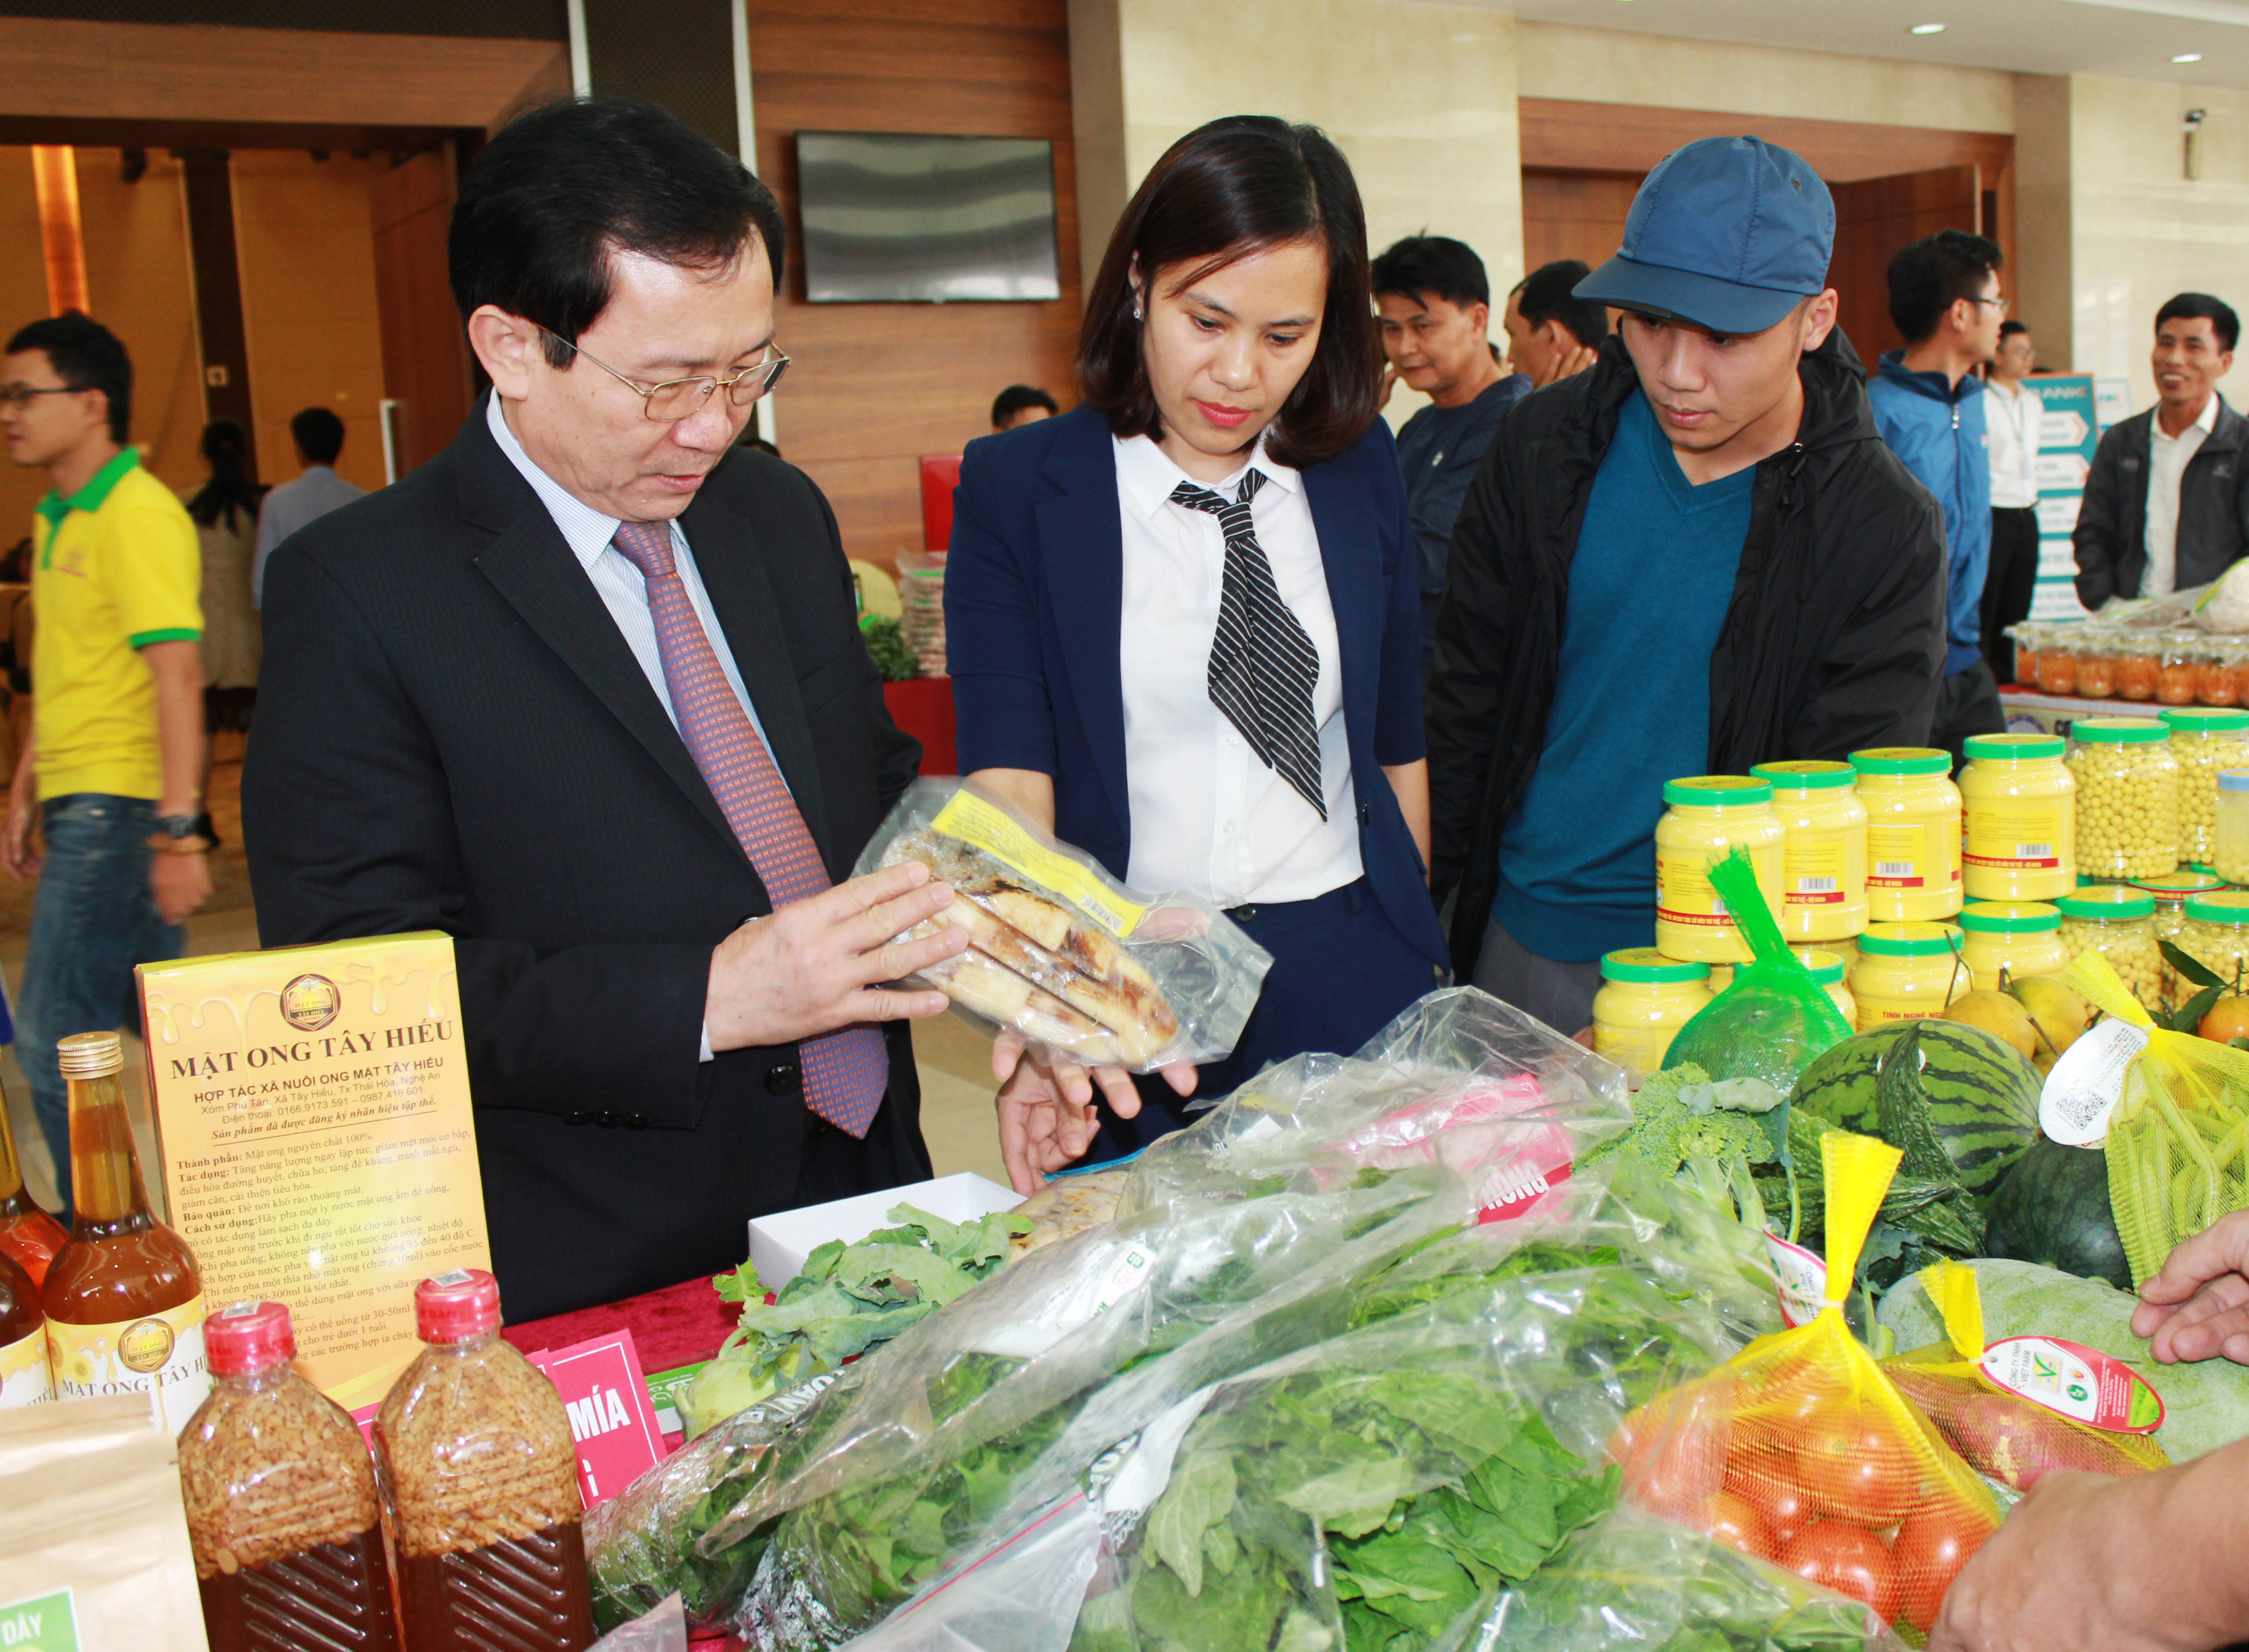 Phó chủ tịch UBND tỉnh Đinh Viết Hồng tham quan gian hàng trưng bày sản phẩm bên lề hội nghị. Ảnh Việt Phương